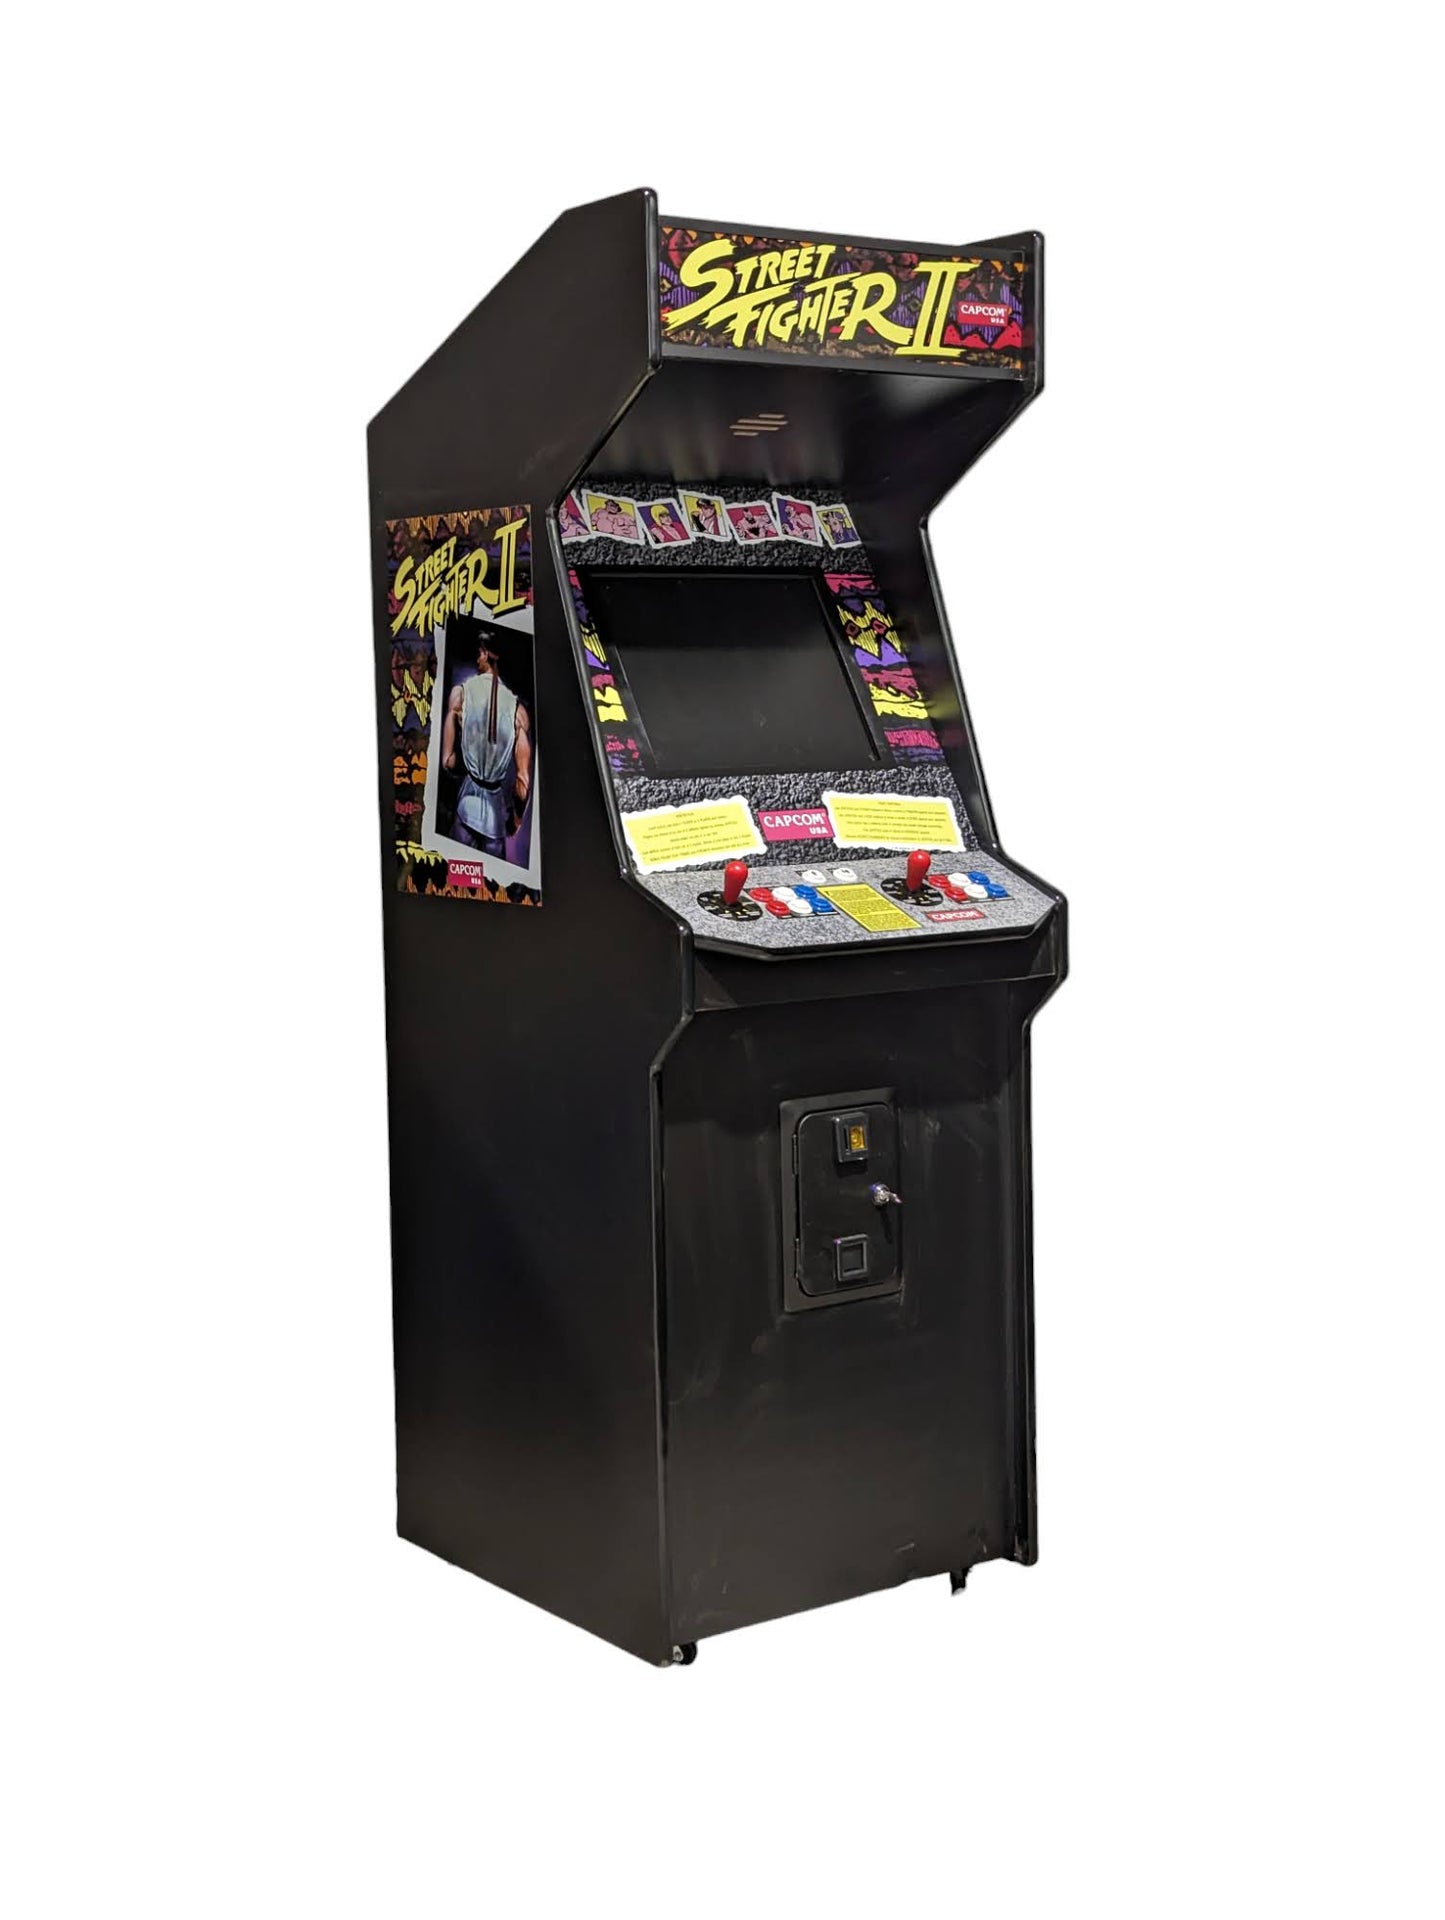 1 x Classic Replica Arcade Hire